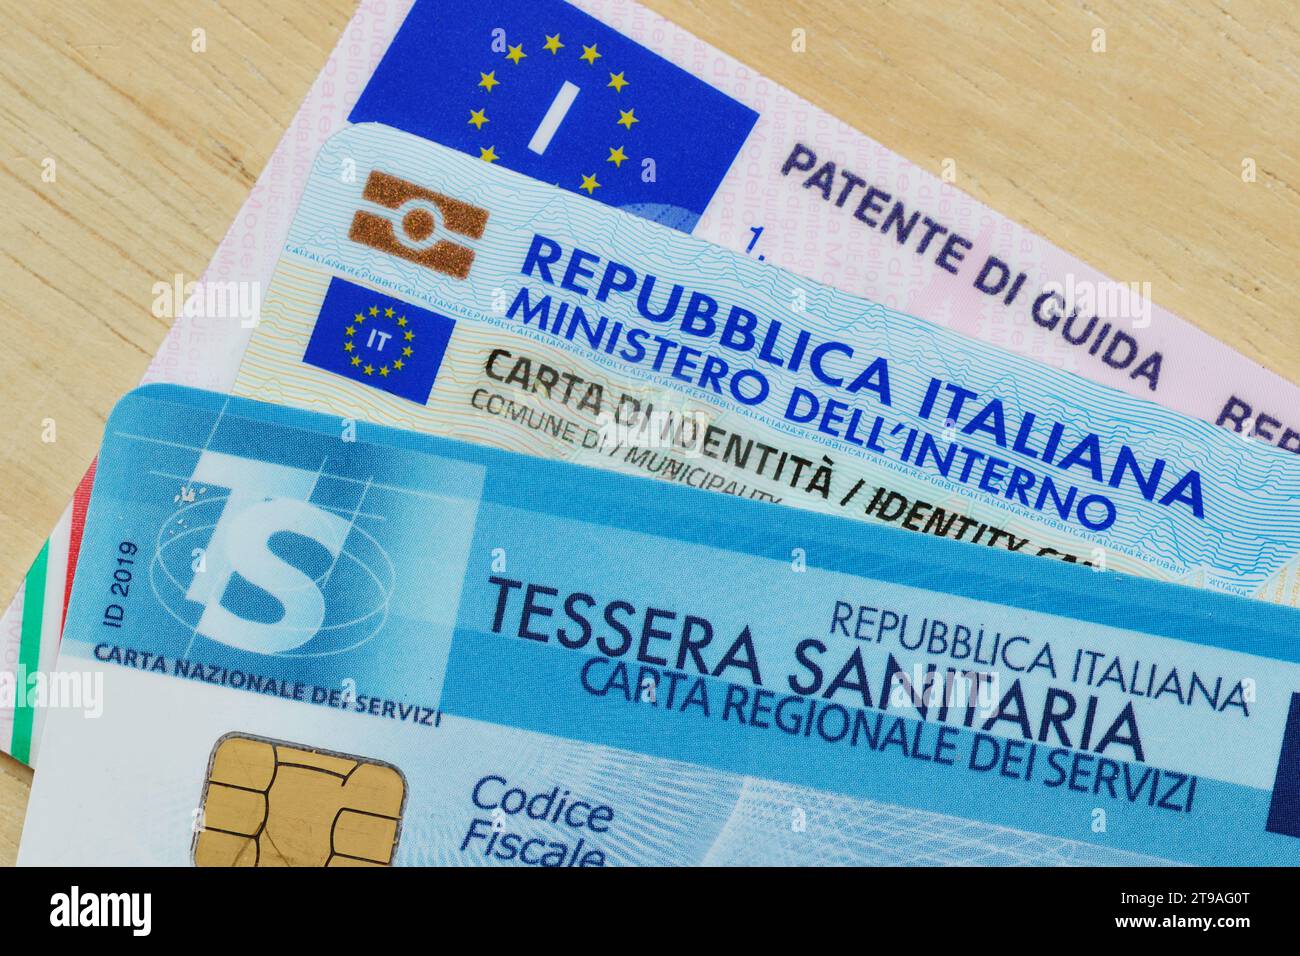 Gros plan de la carte italienne de permis de conduire, de la carte d'identité et de la carte d'assurance maladie Banque D'Images